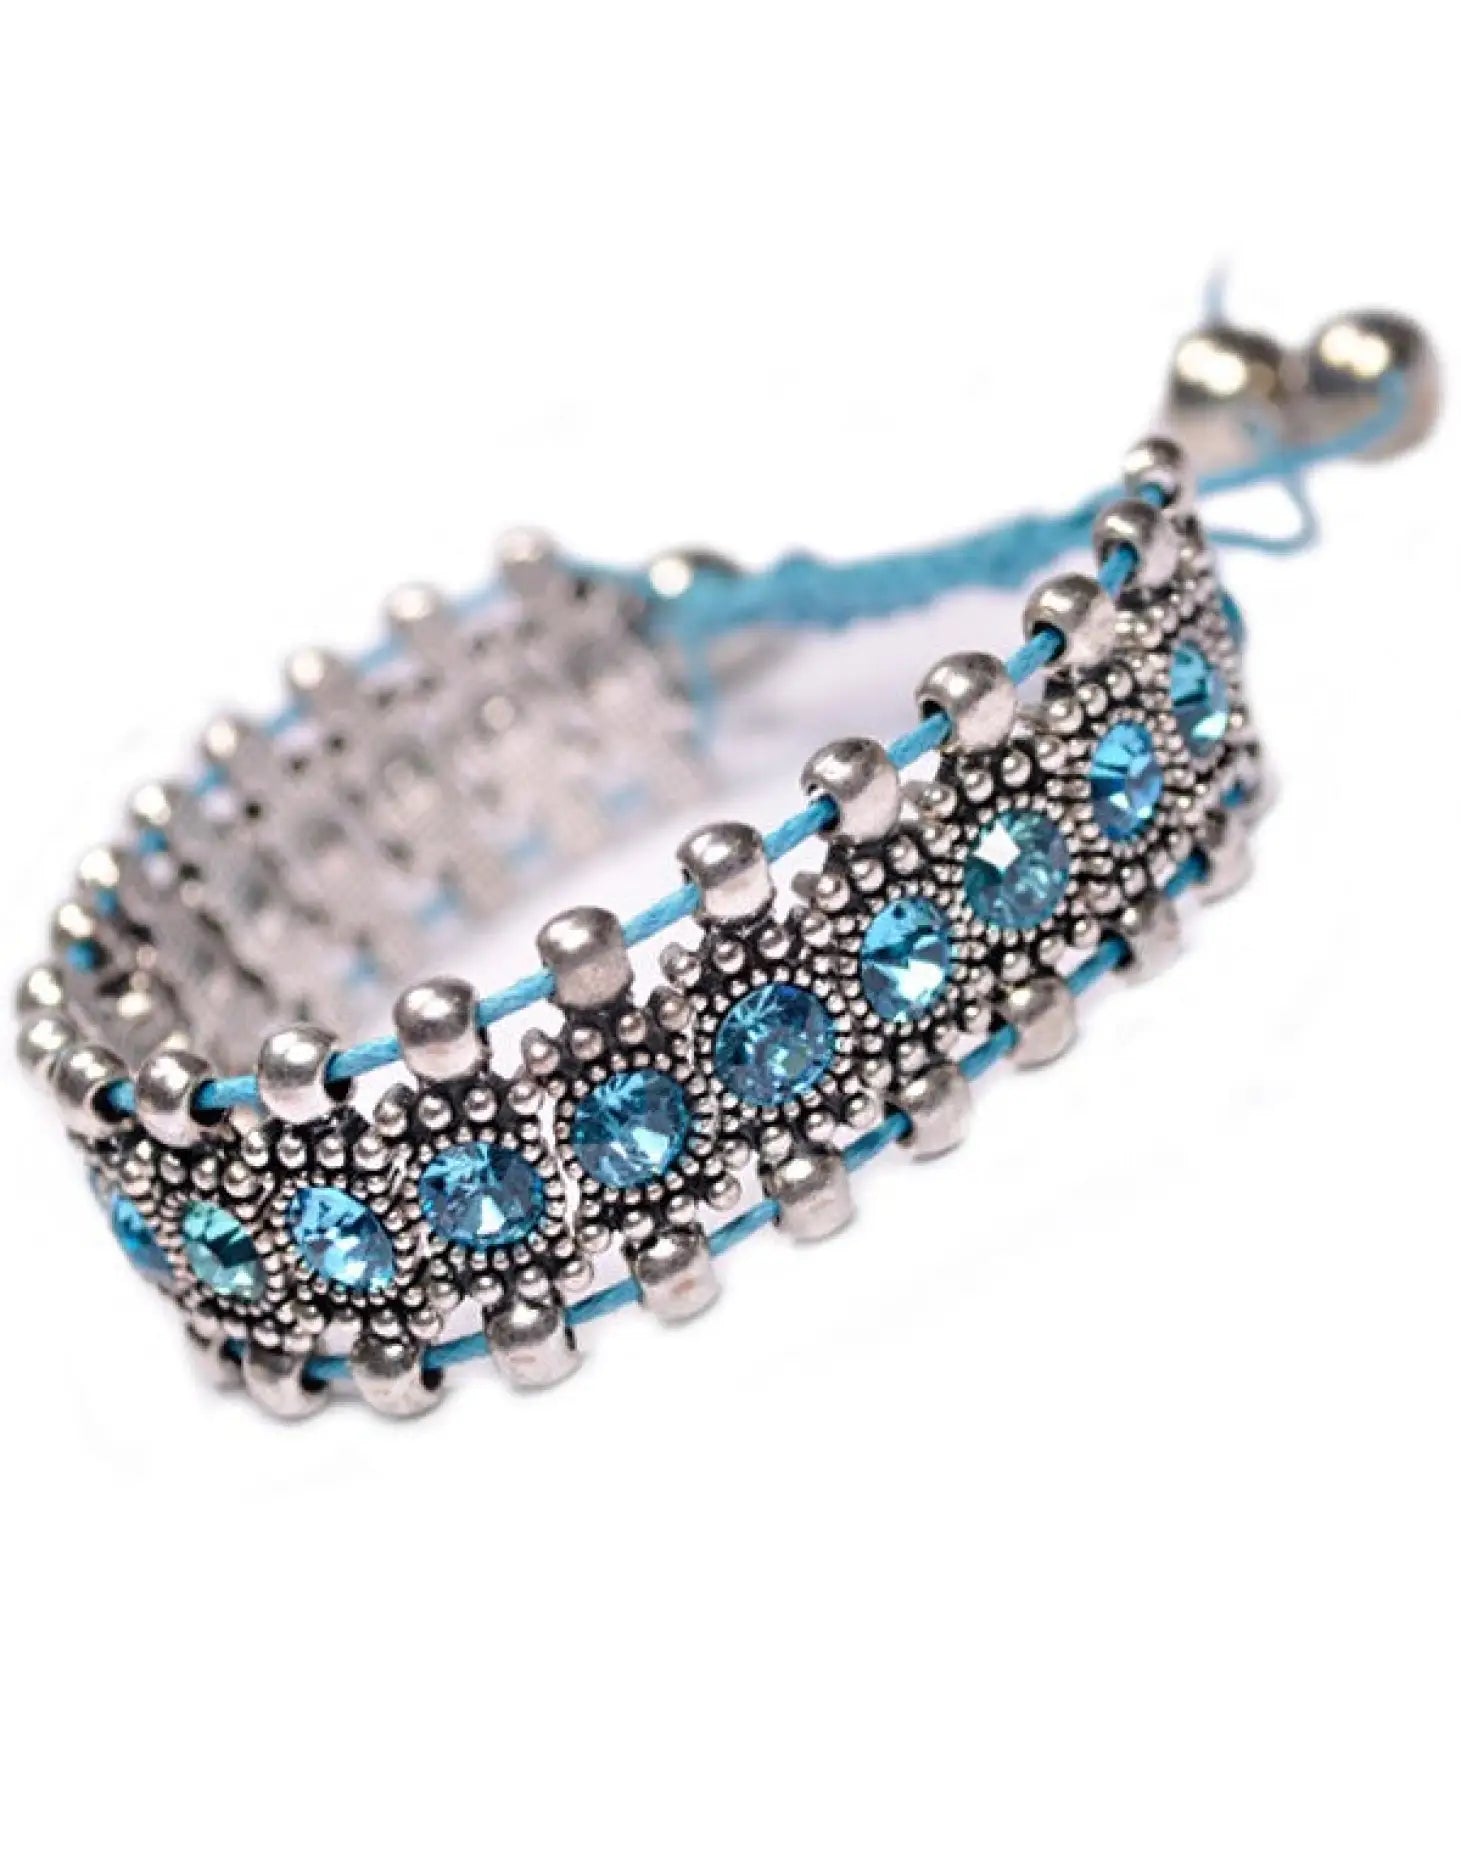 Blue beaded boho rhinestone bracelet with elastic beads.